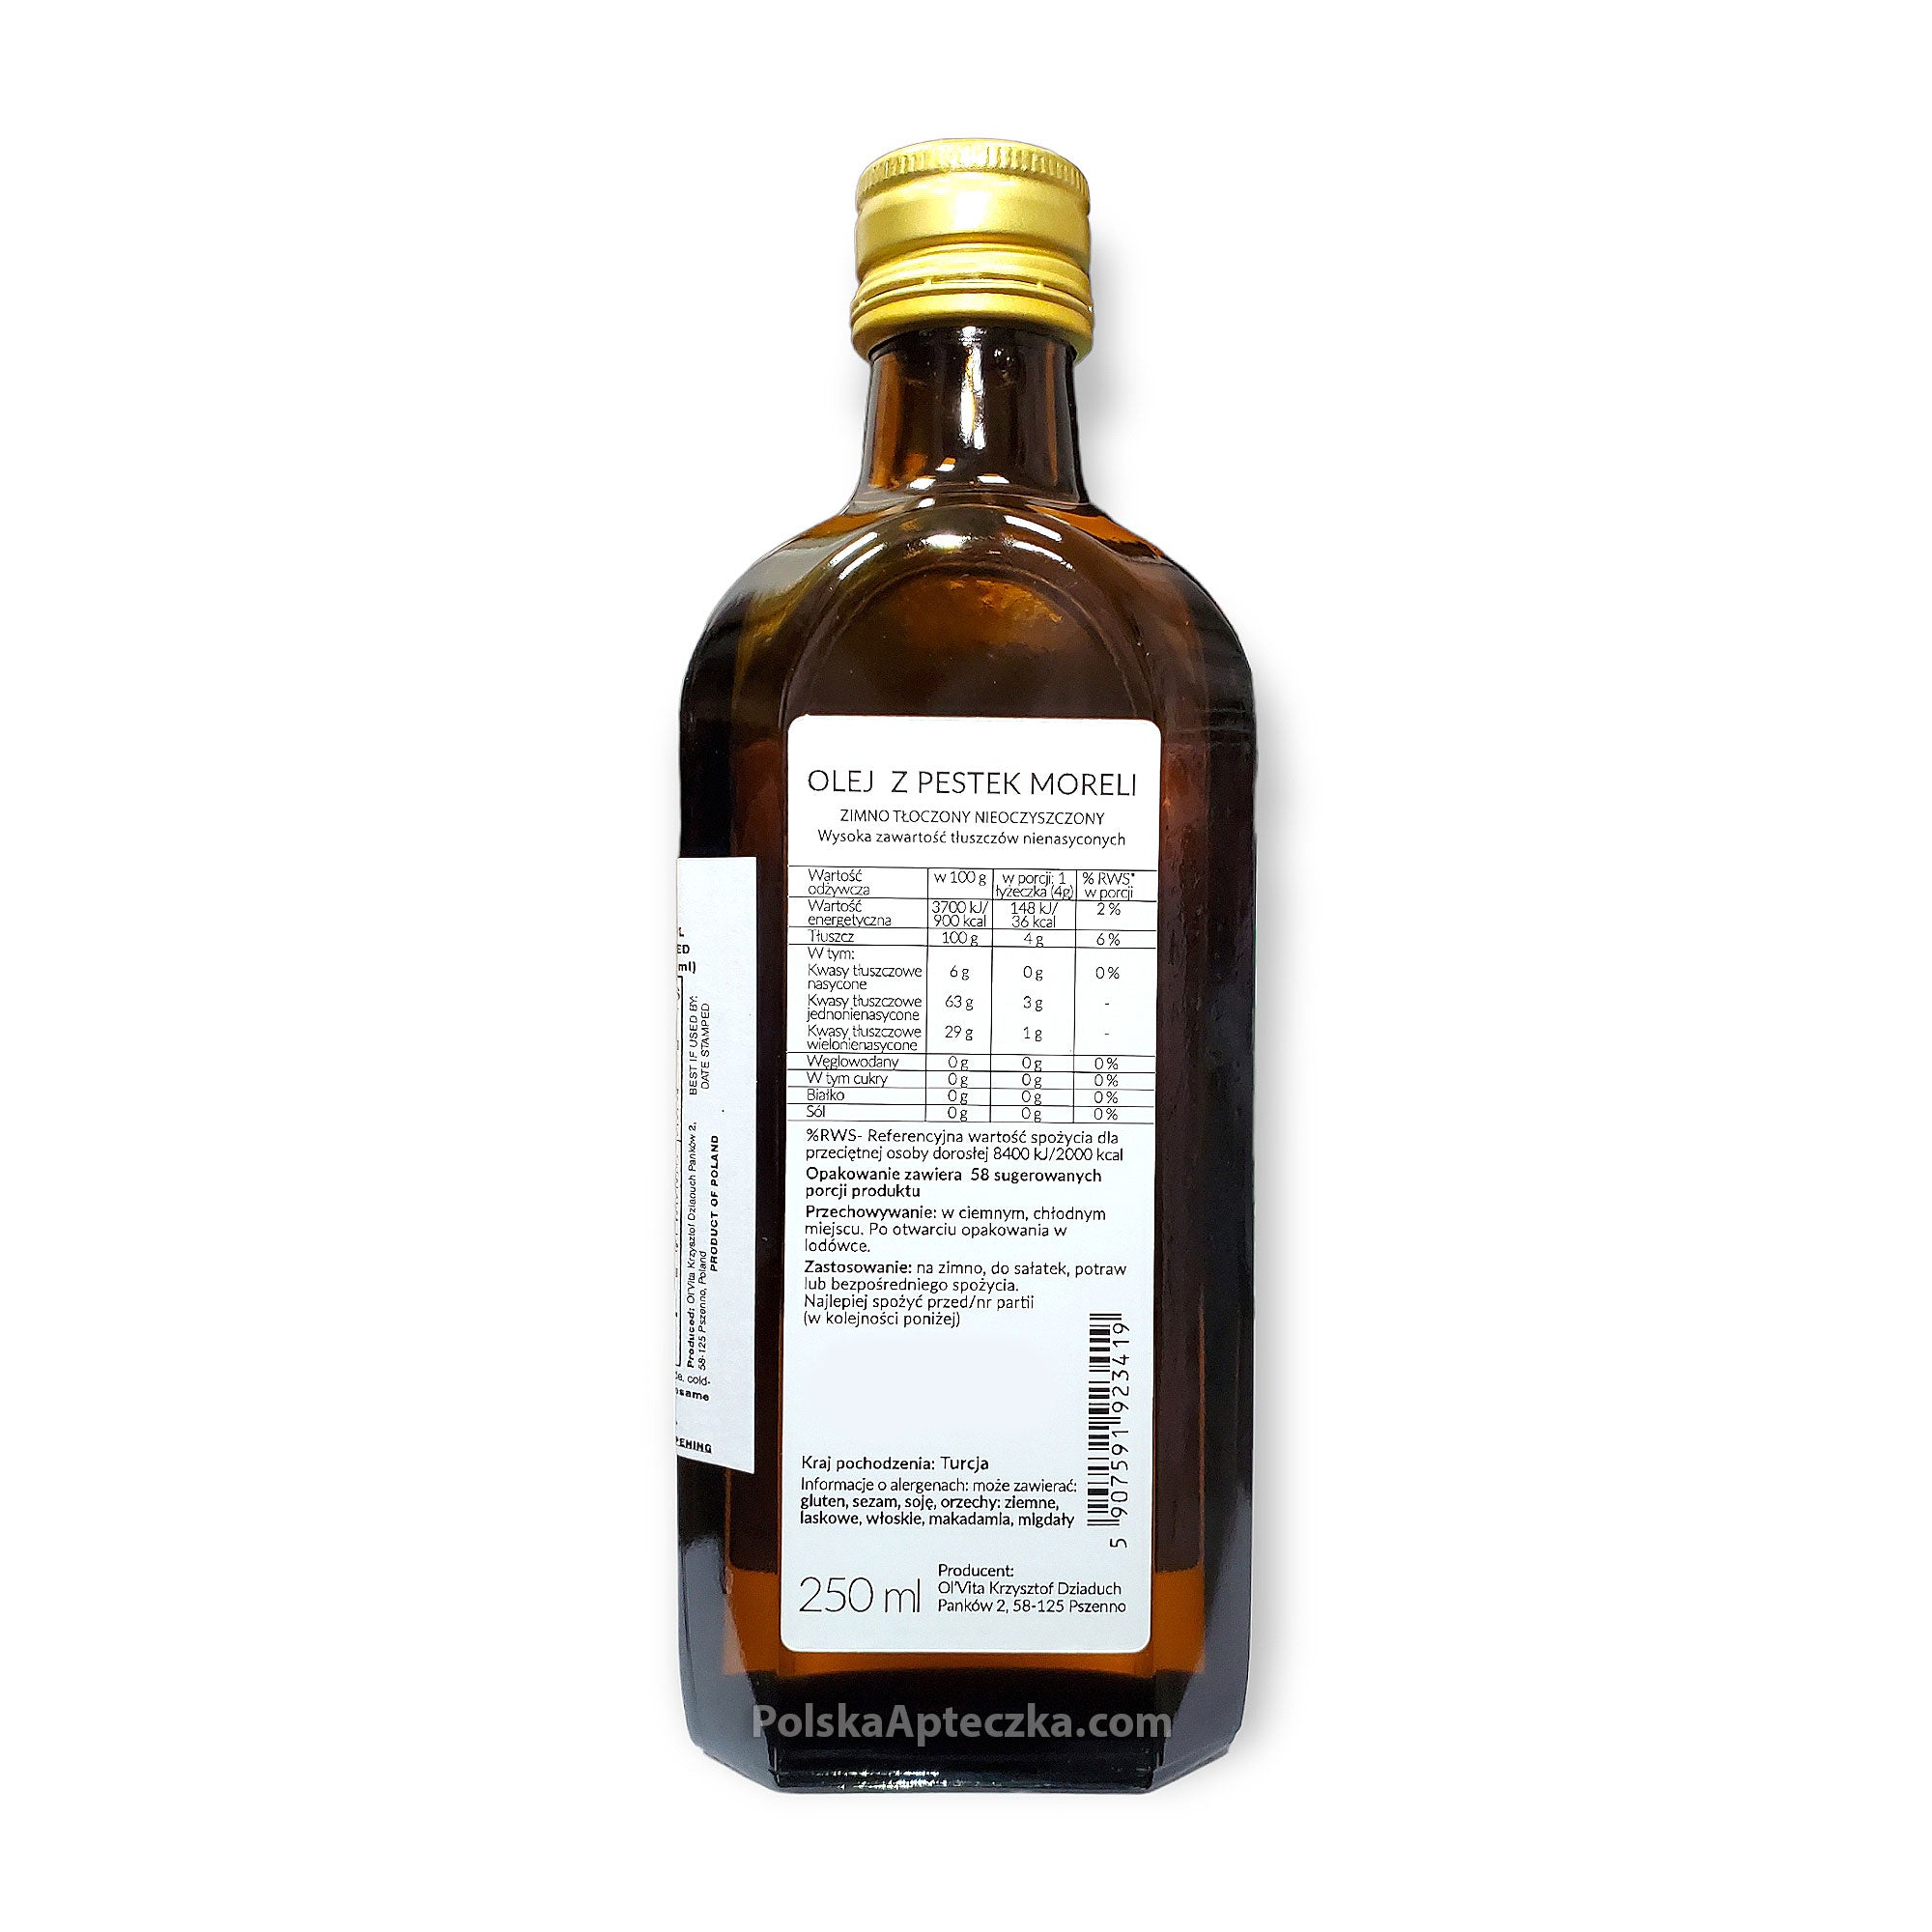 Apricot Oil | Olej z Pestek Moreli zawieraj?cy du?e dawki witaminy B17, 250ml, Olvita